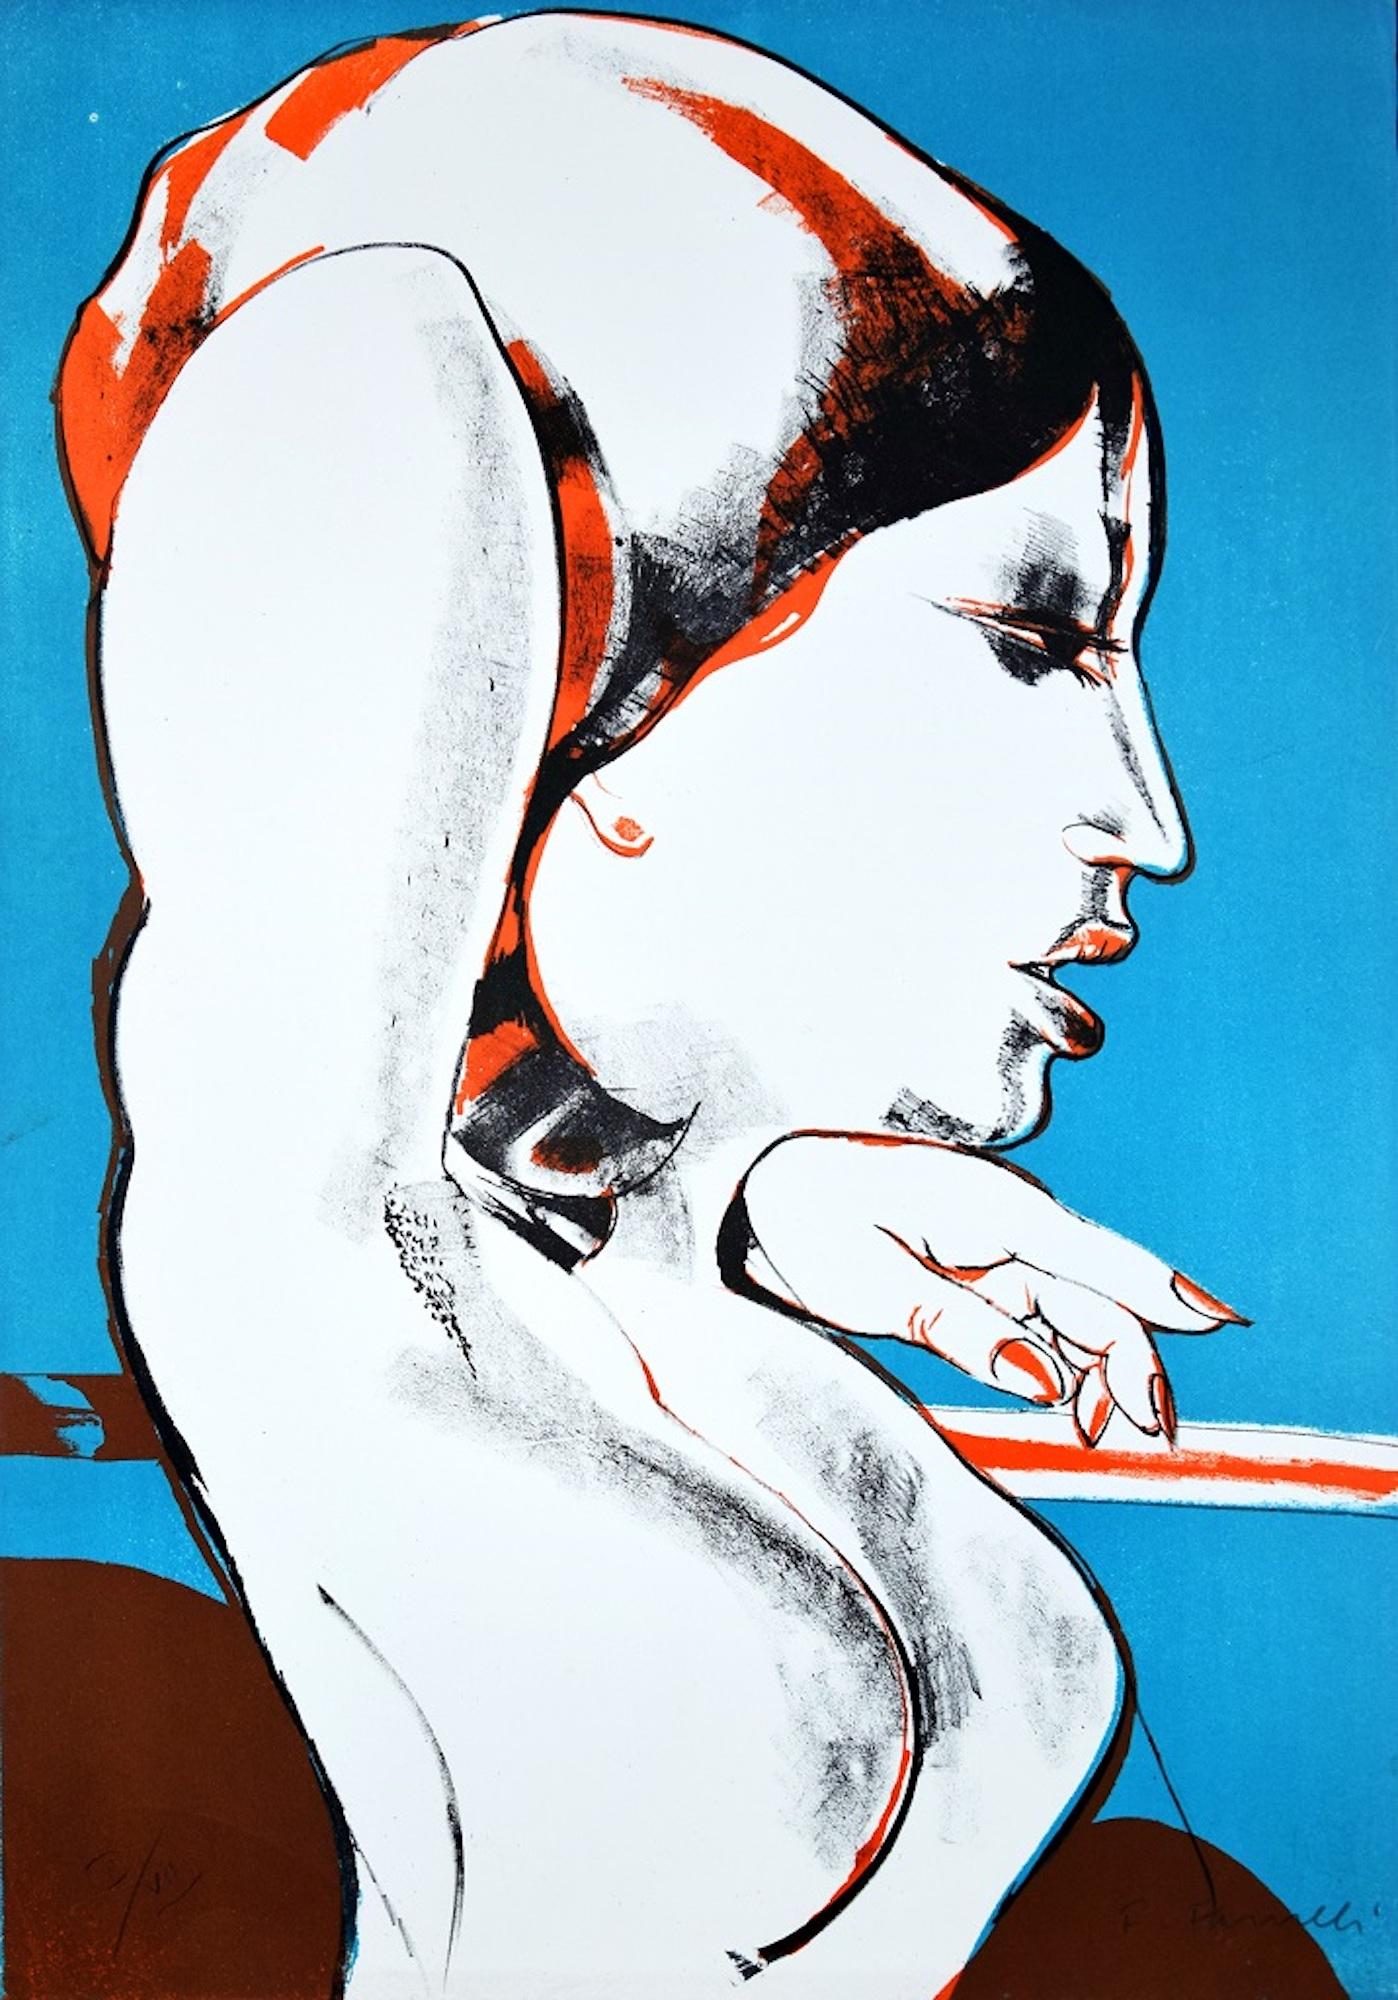 Fernando FARULLI Print - The Diva - Lithograph by Fernando Farulli - 1970s